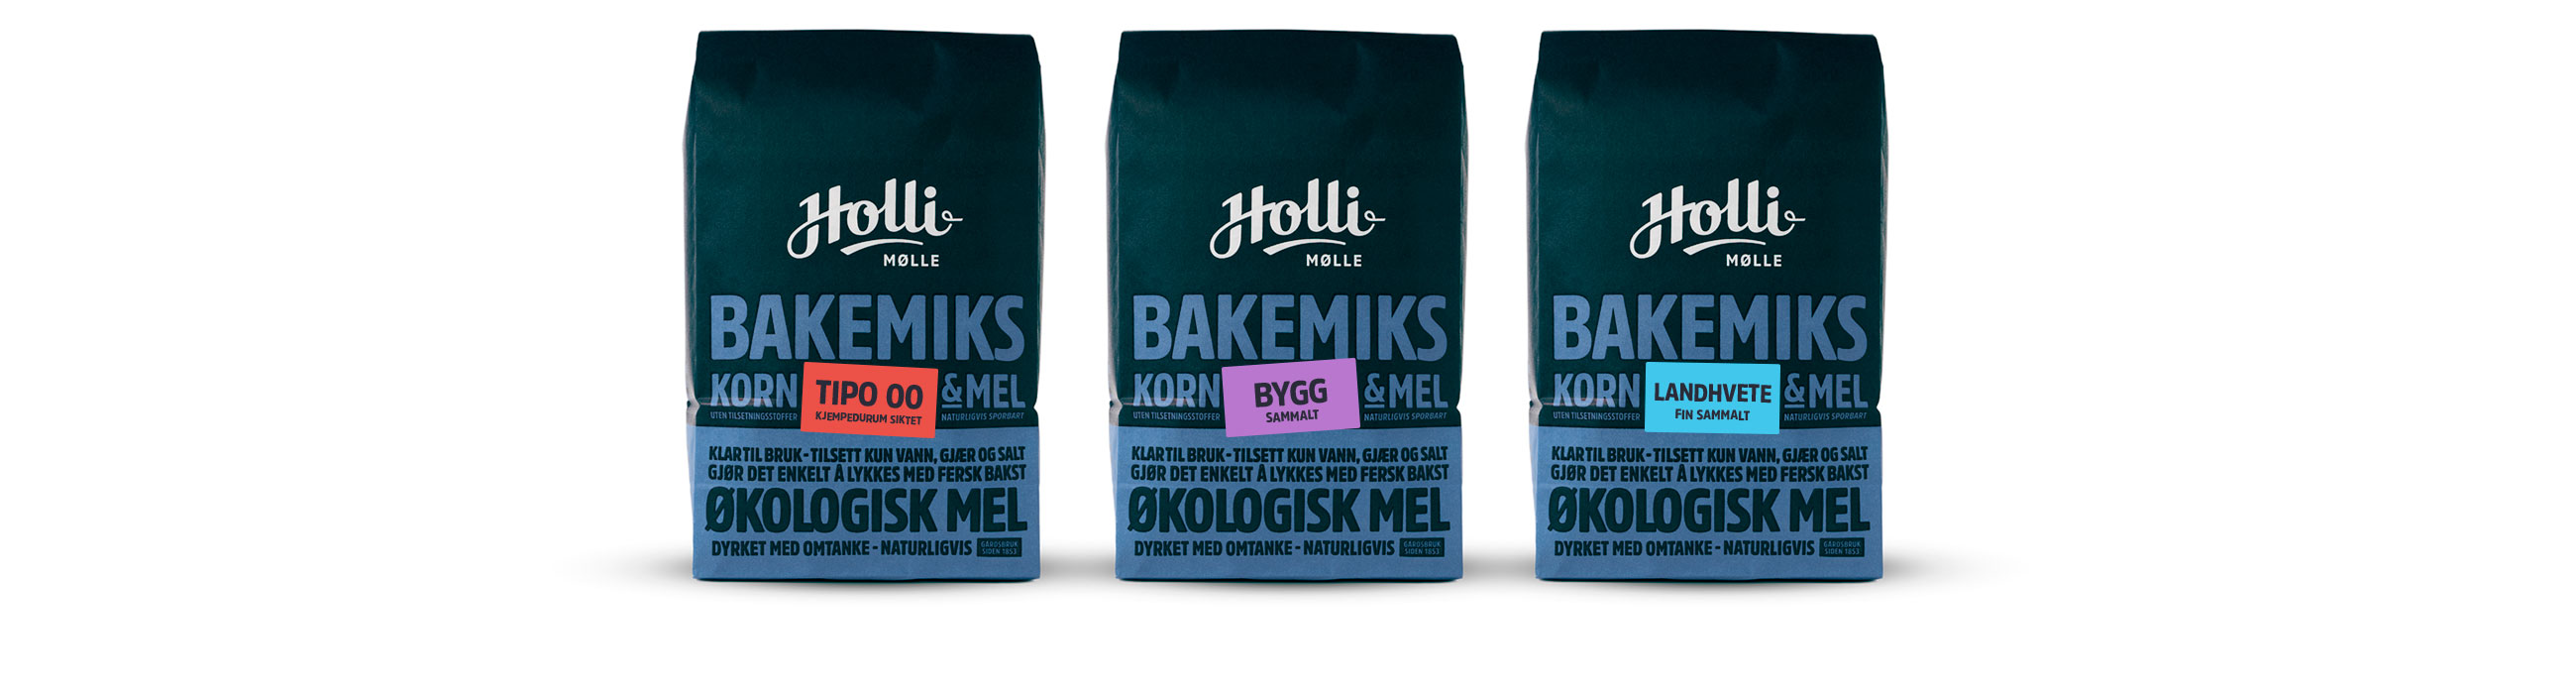 Holli Mølle Bakemiks, Tipo 00, bygg og landhvete. Emballasje packaging design.